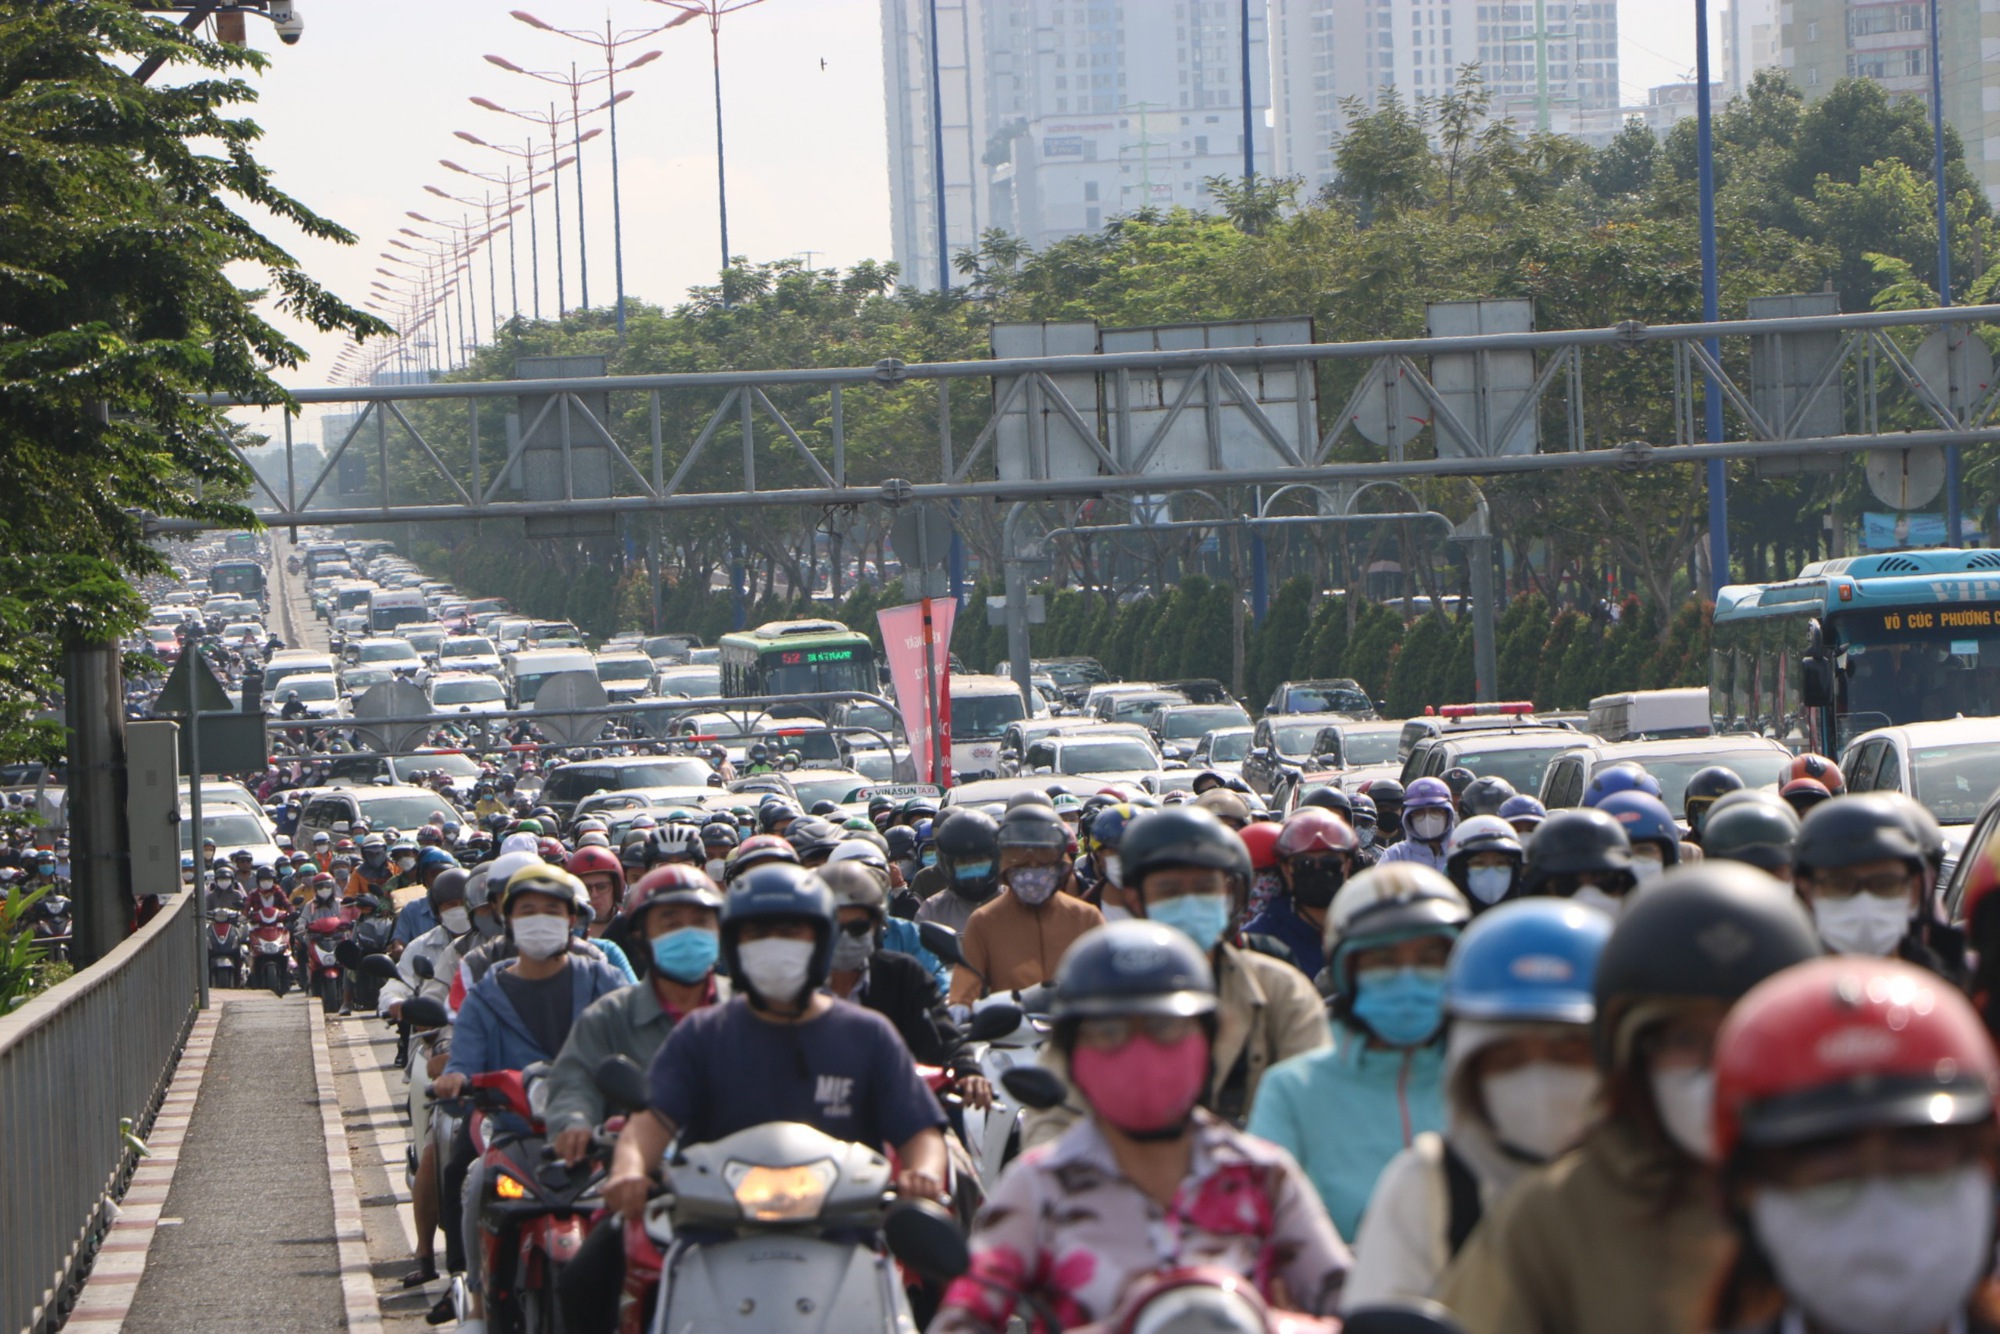 5 xe ô tô tông nhau liên hoàn trên cầu Sài Gòn, hàng nghìn phương tiện chôn chân vì ù tắc - Ảnh 4.